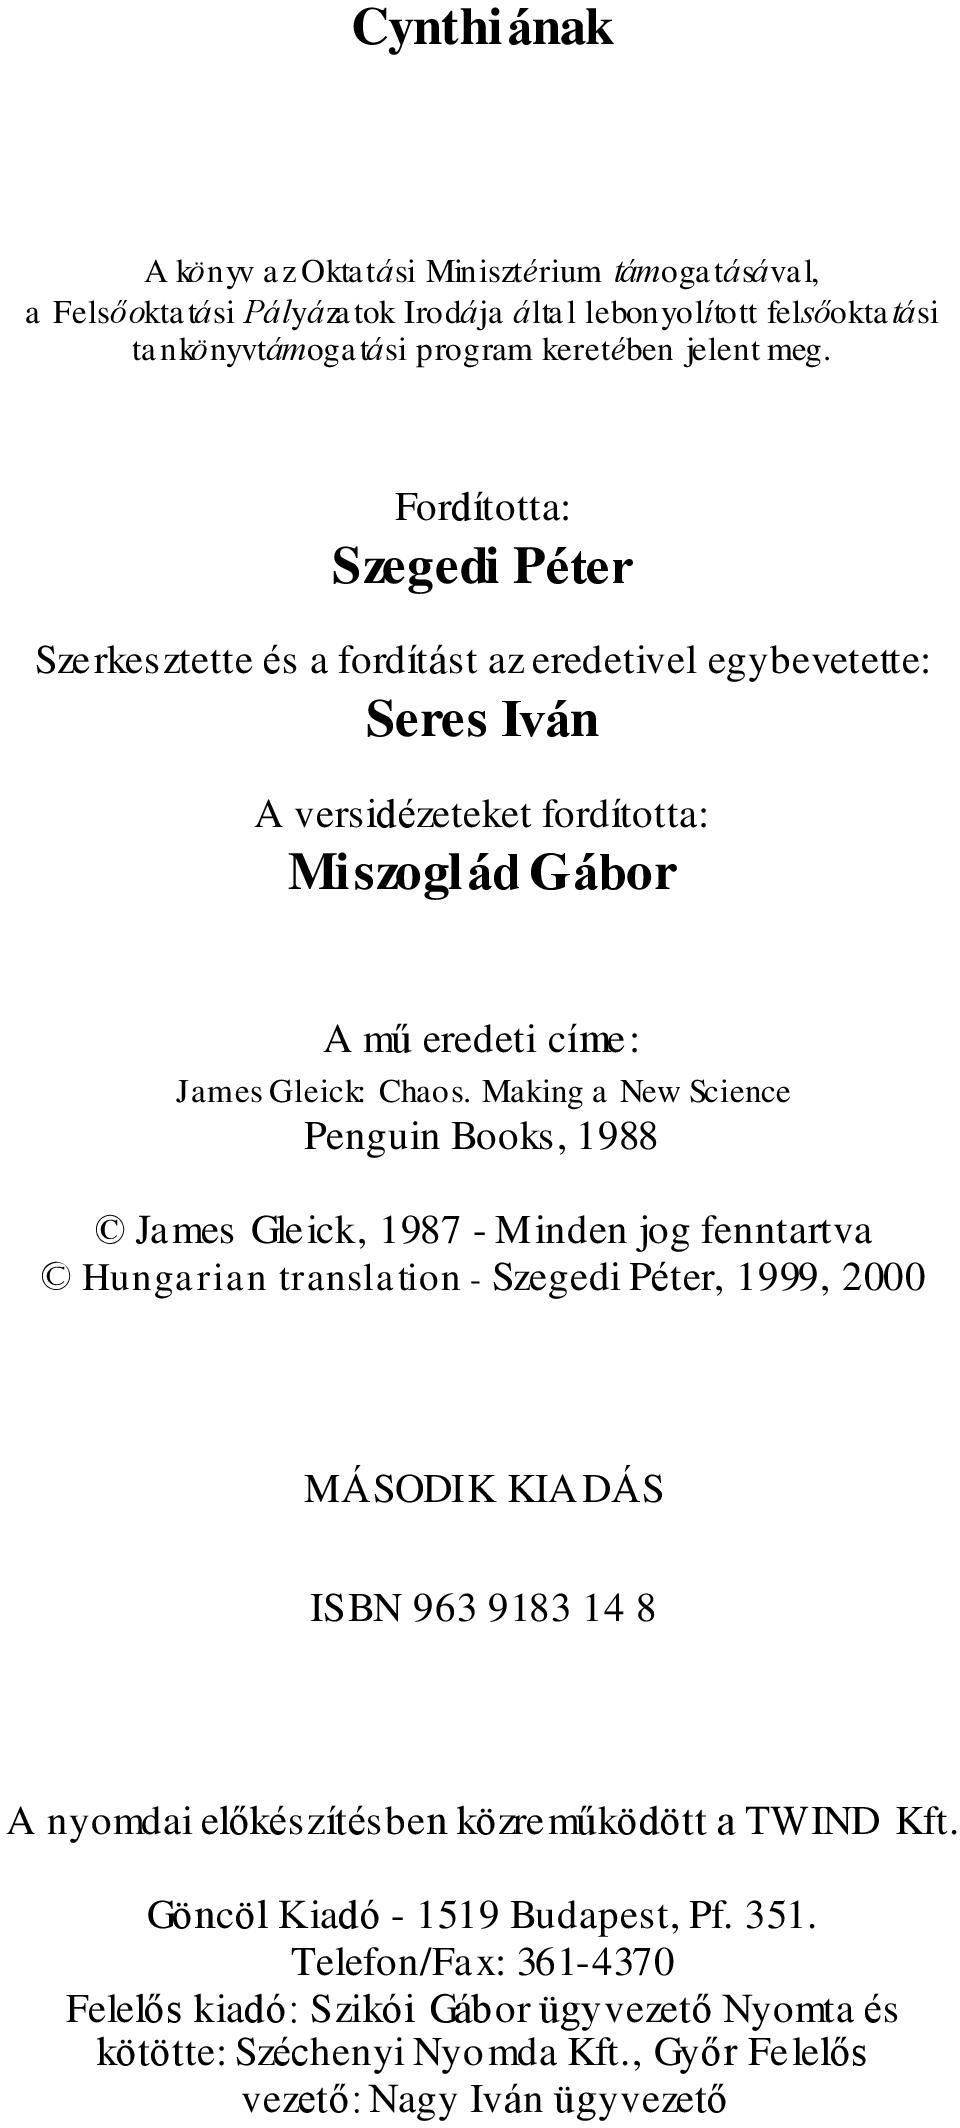 Making a New Science Penguin Books, 1988 James Gleick, 1987 - Minden jog fenntartva Hungarian translation - Szegedi Péter, 1999, 2000 MÁSODIK KIADÁS ISBN 963 9183 14 8 A nyomdai